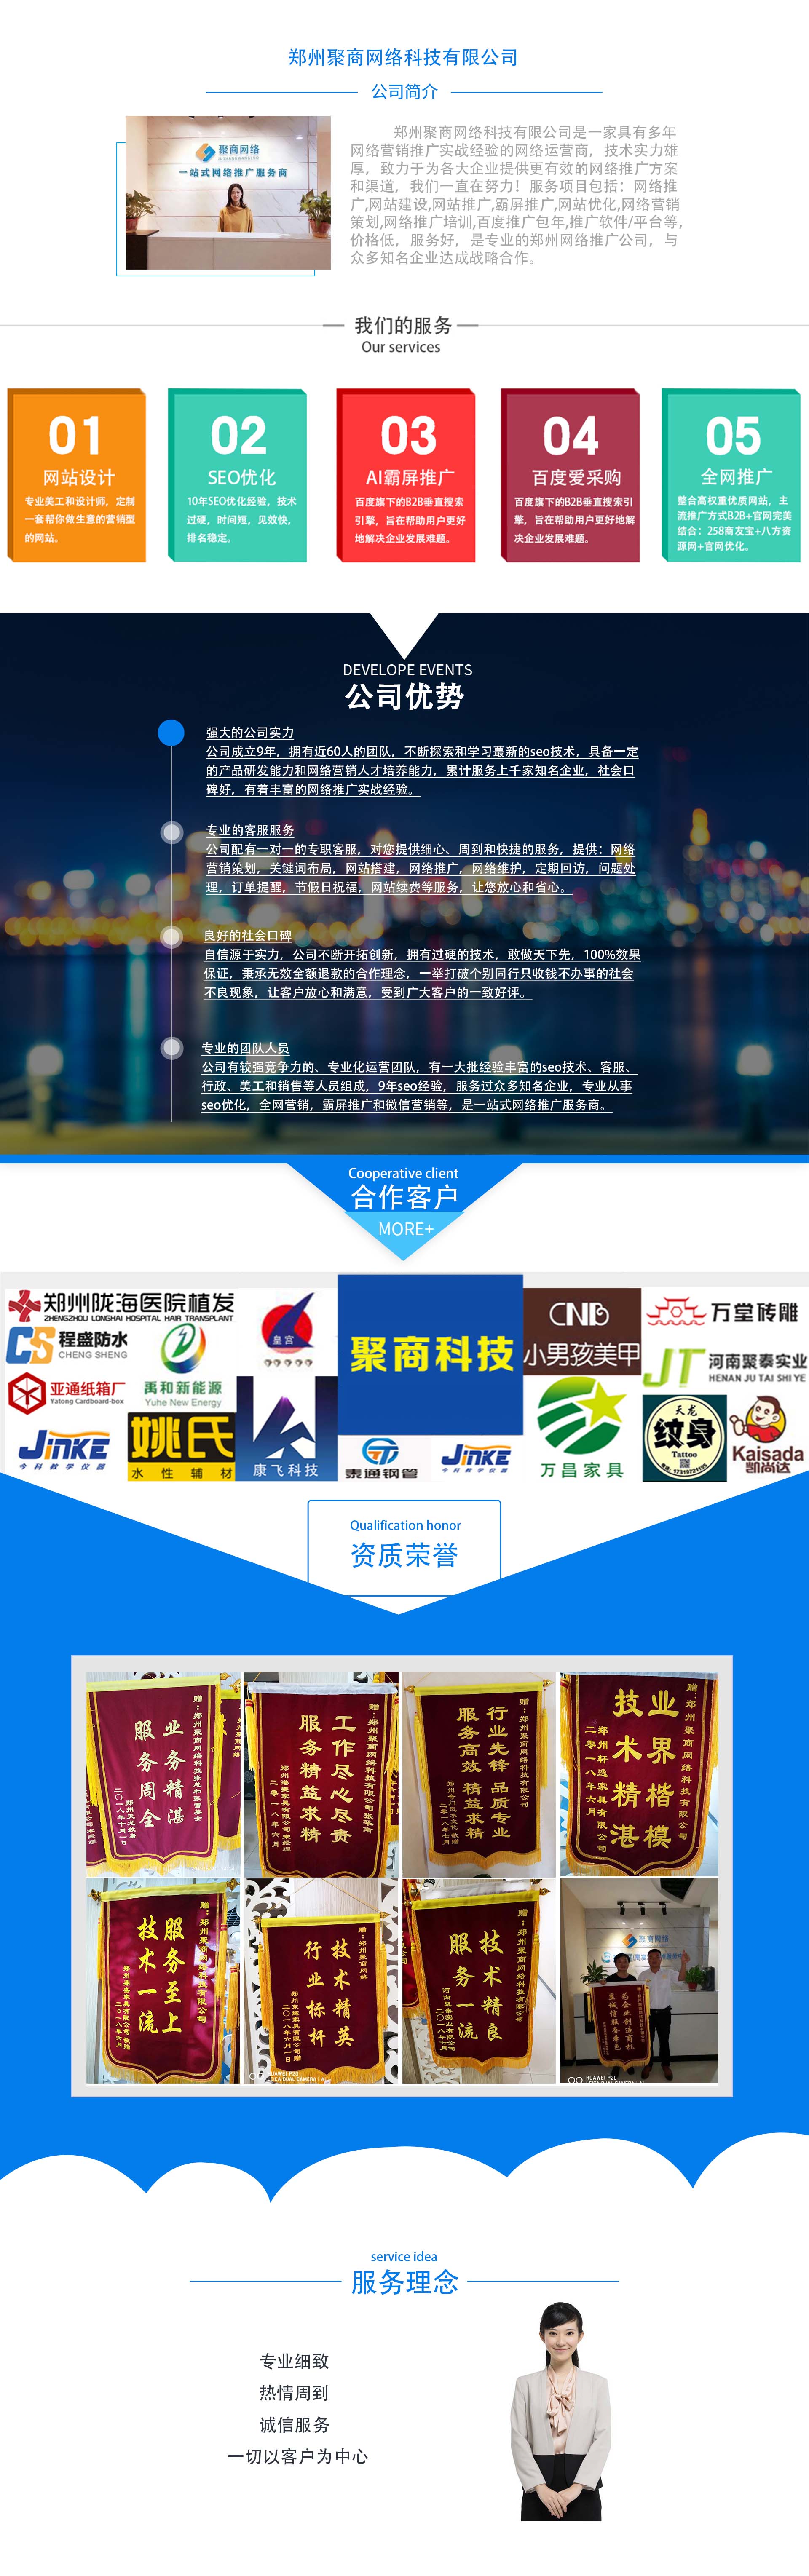 郑州seo优化「聚商科技」当天网站首页